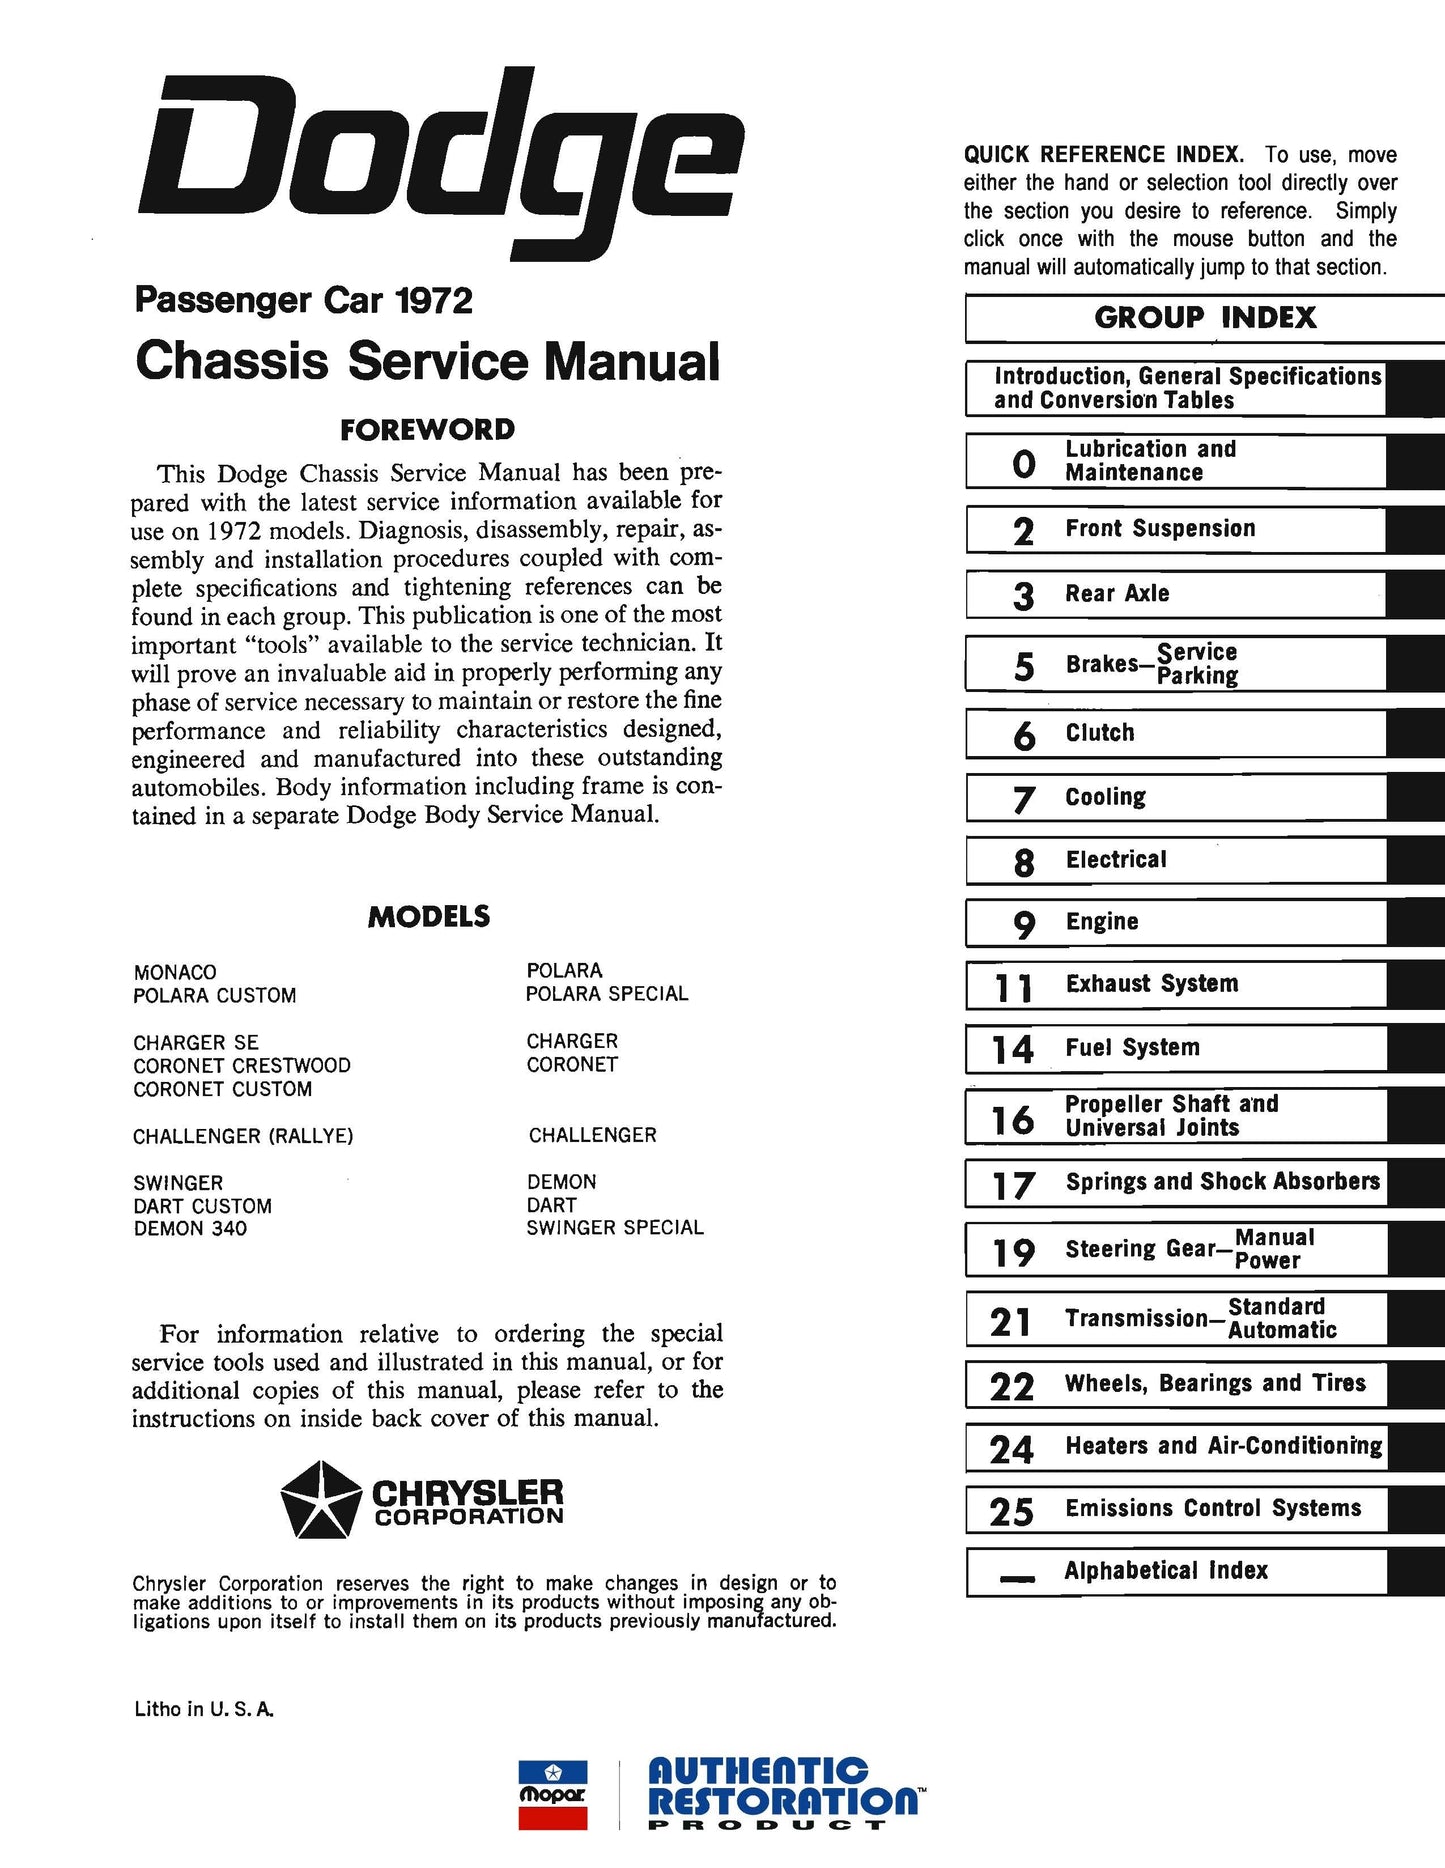 1972 Dodge Service Repair Manuals - All Models